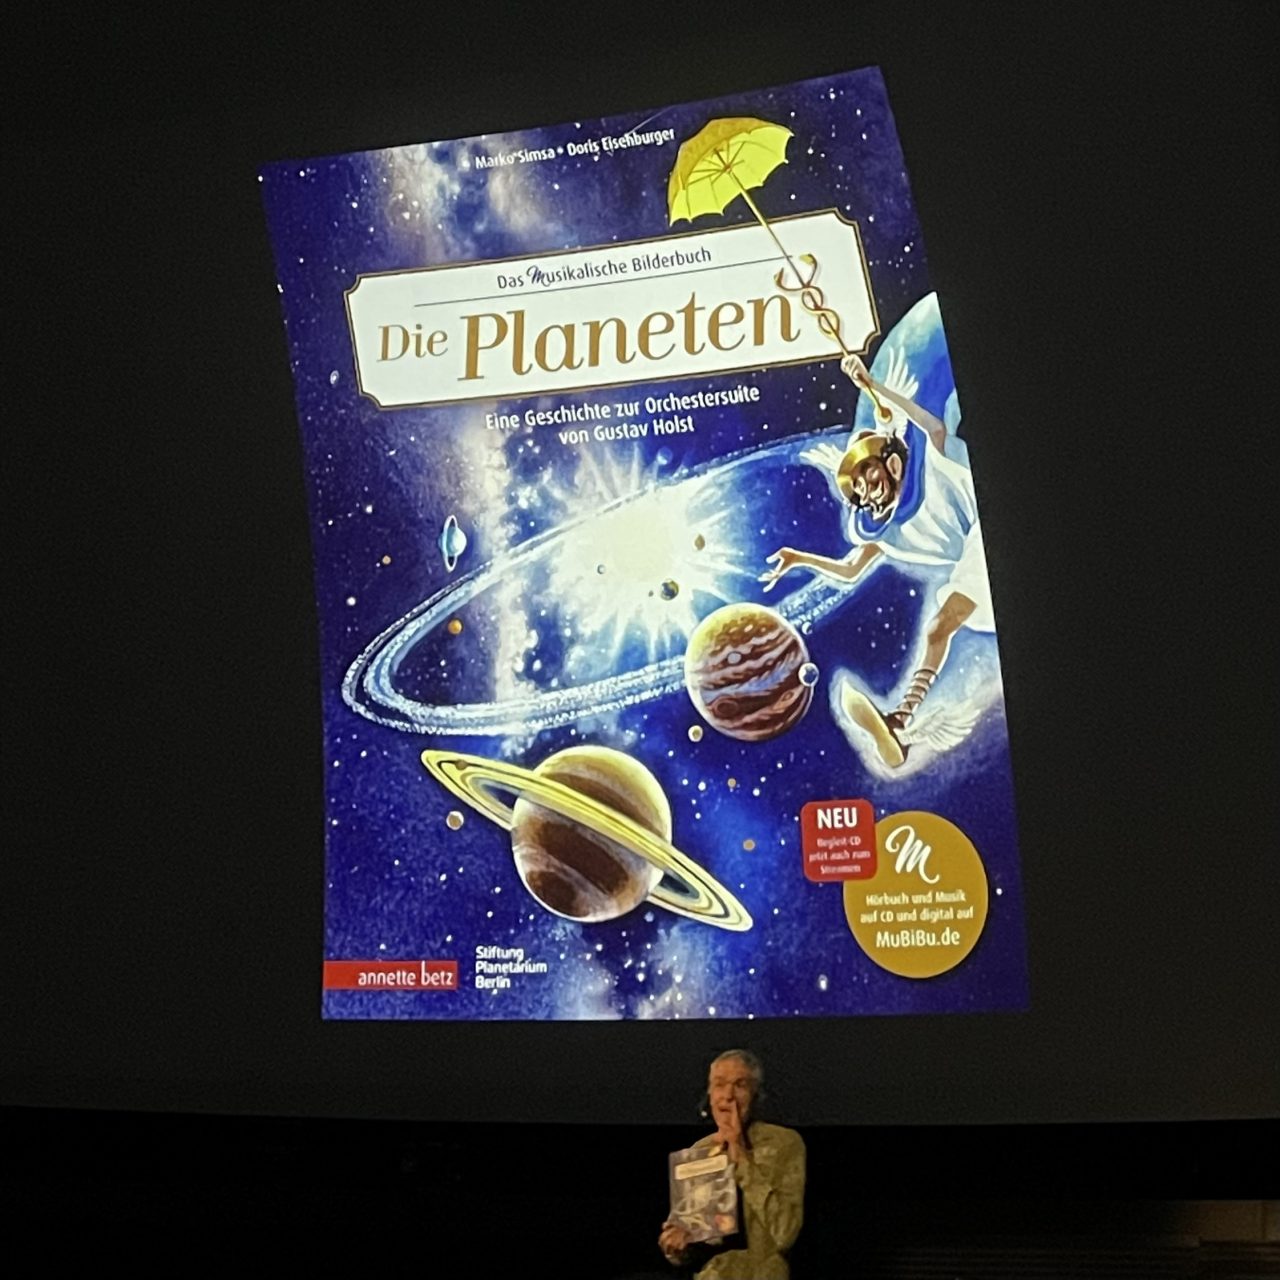 groß projiziertes Buchcover "Die Planten" im Planetarium davor kleiner der Autor